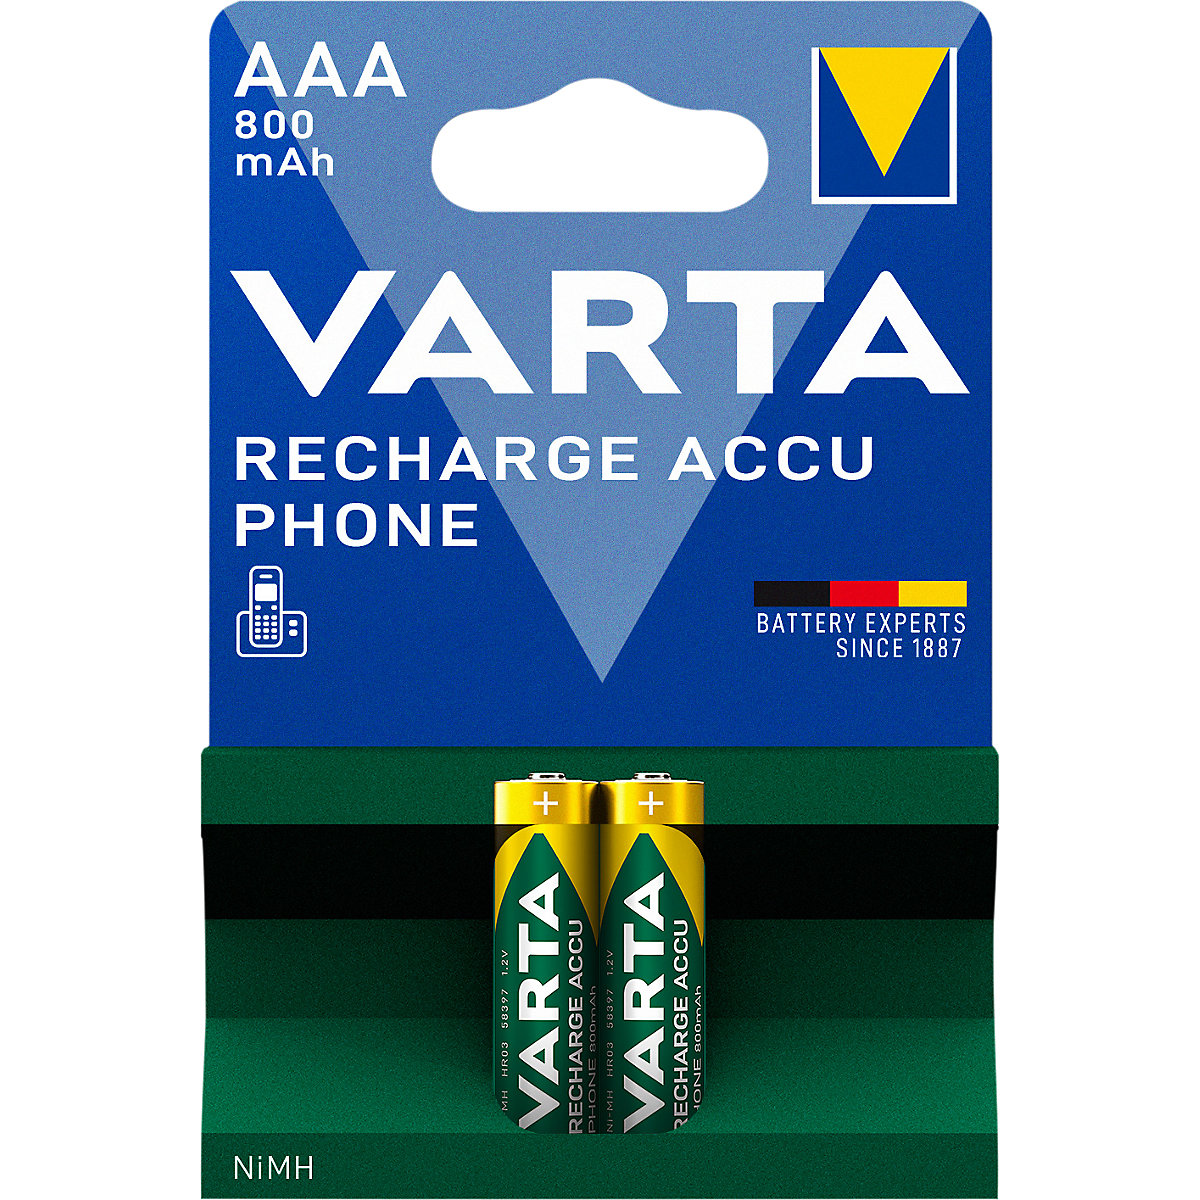 Accumulateur rechargeable pour téléphone - VARTA